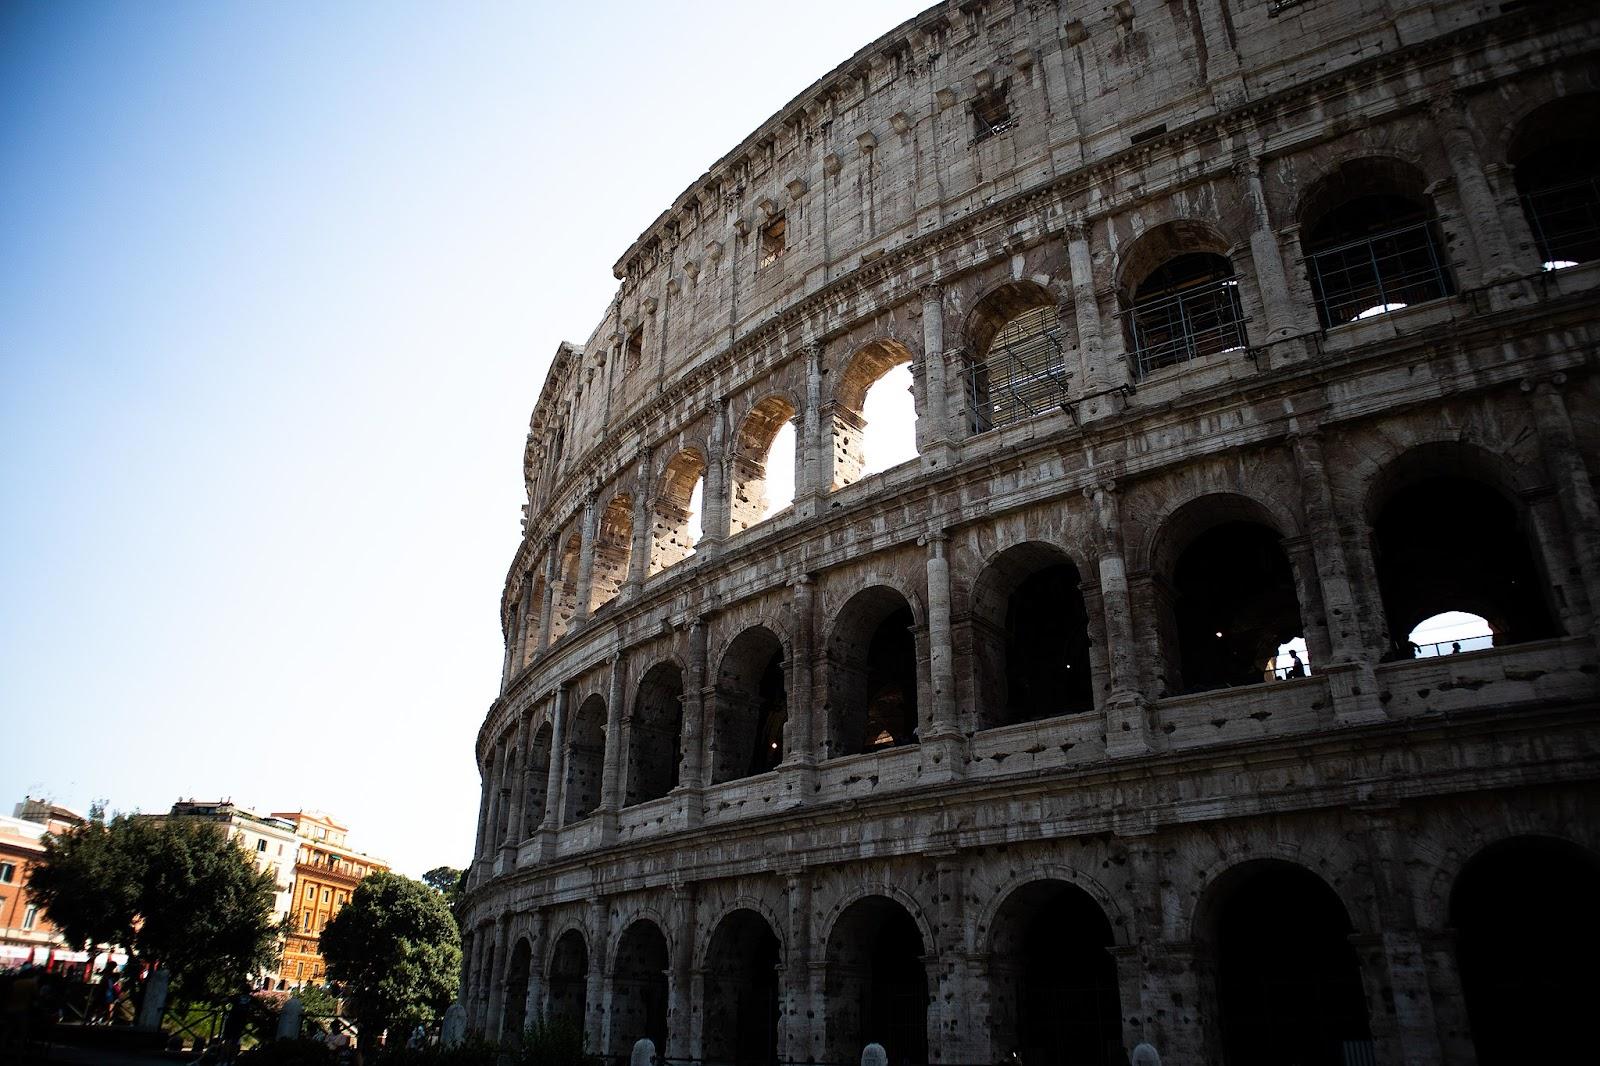 Hva kjennetegner den romerske kulturen?